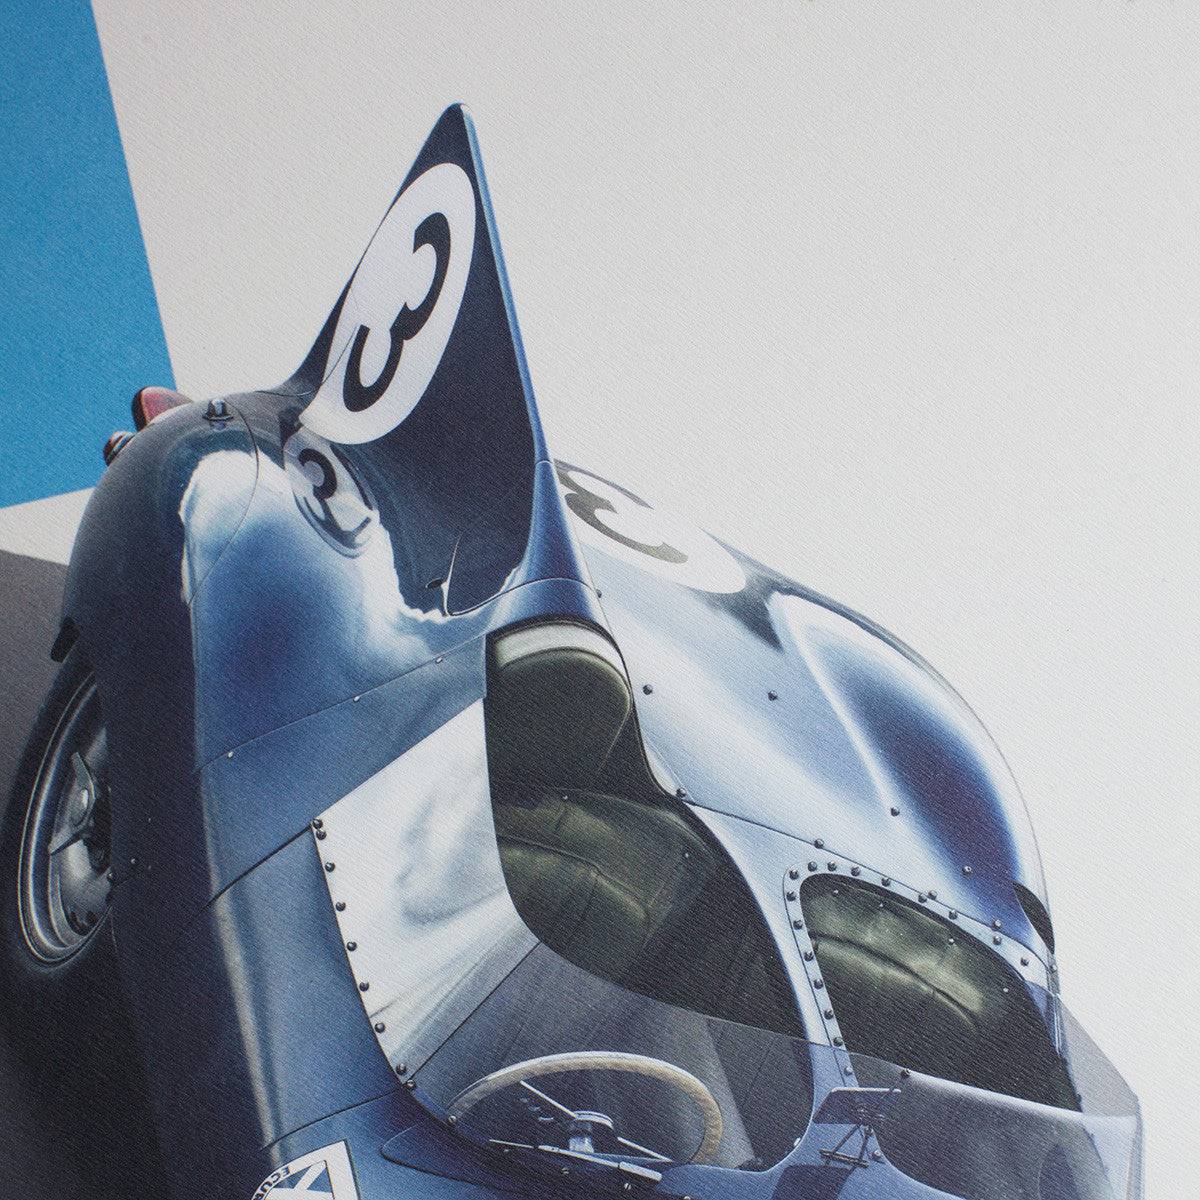 Jaguar D Type - Blue - 24h Le Mans - 1957 - Poster